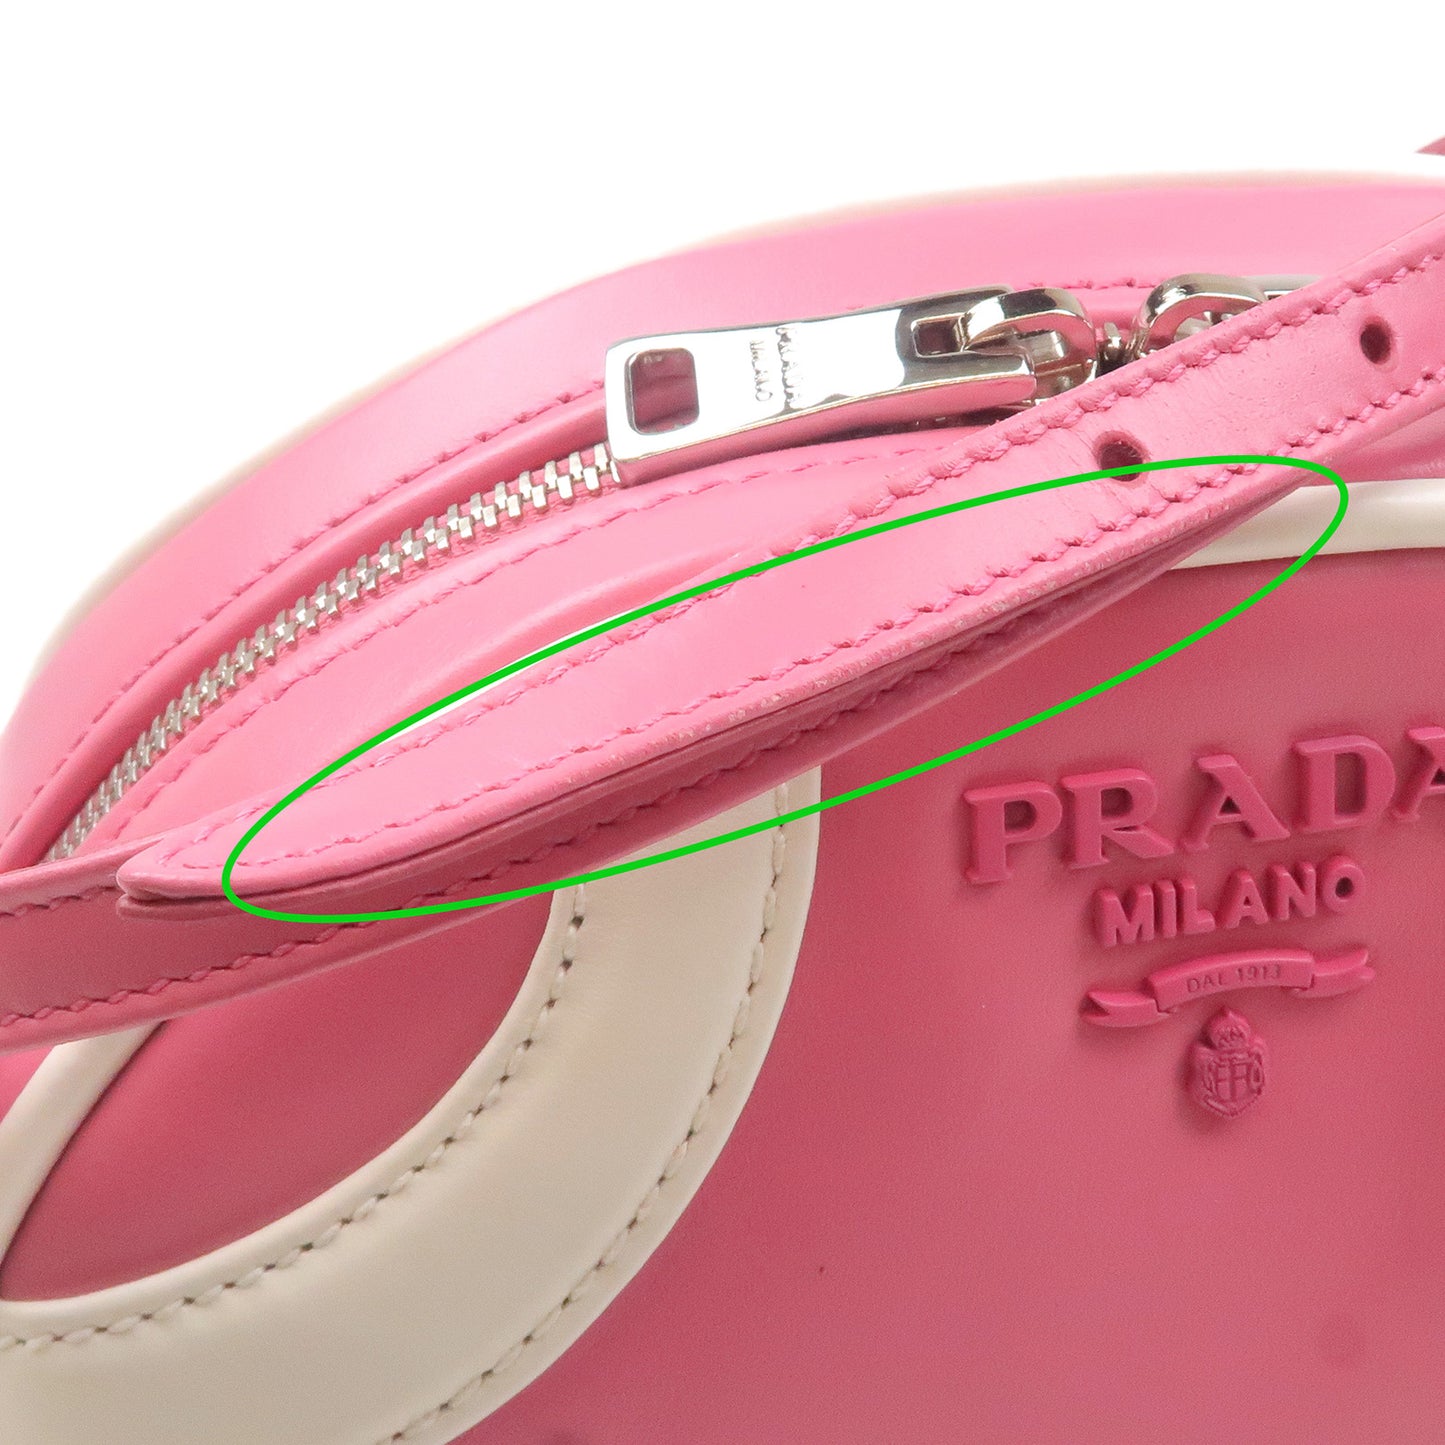 PRADA Leather Shoulder Bag BEGONIA BIAN Pink White 1BH140